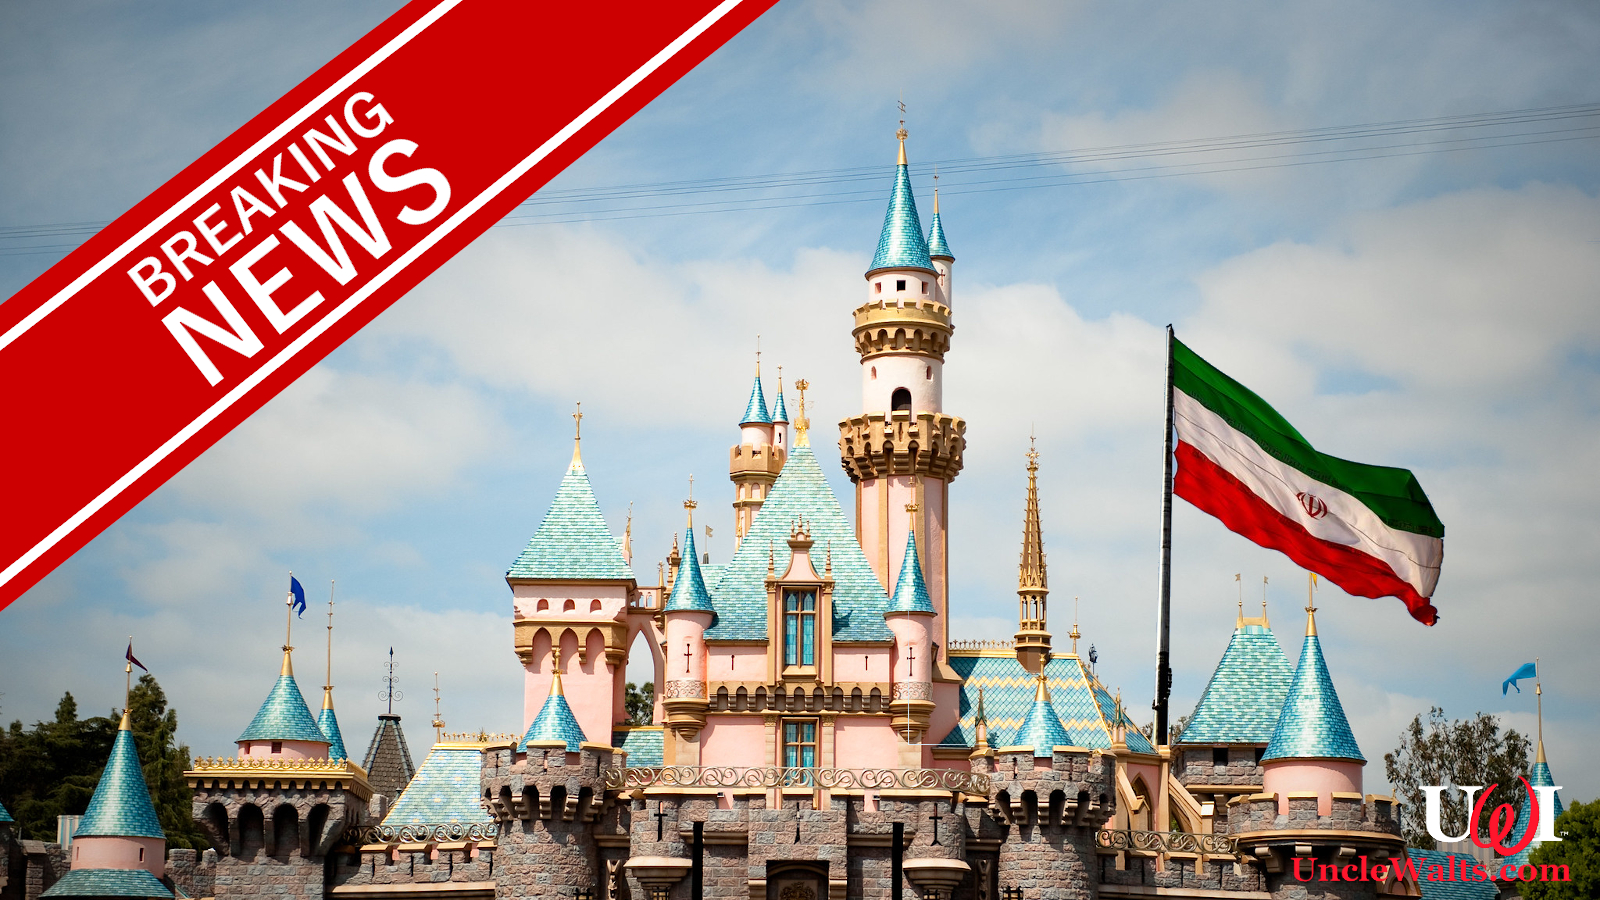 Breaking Disneyland Tehran Plans On Hold